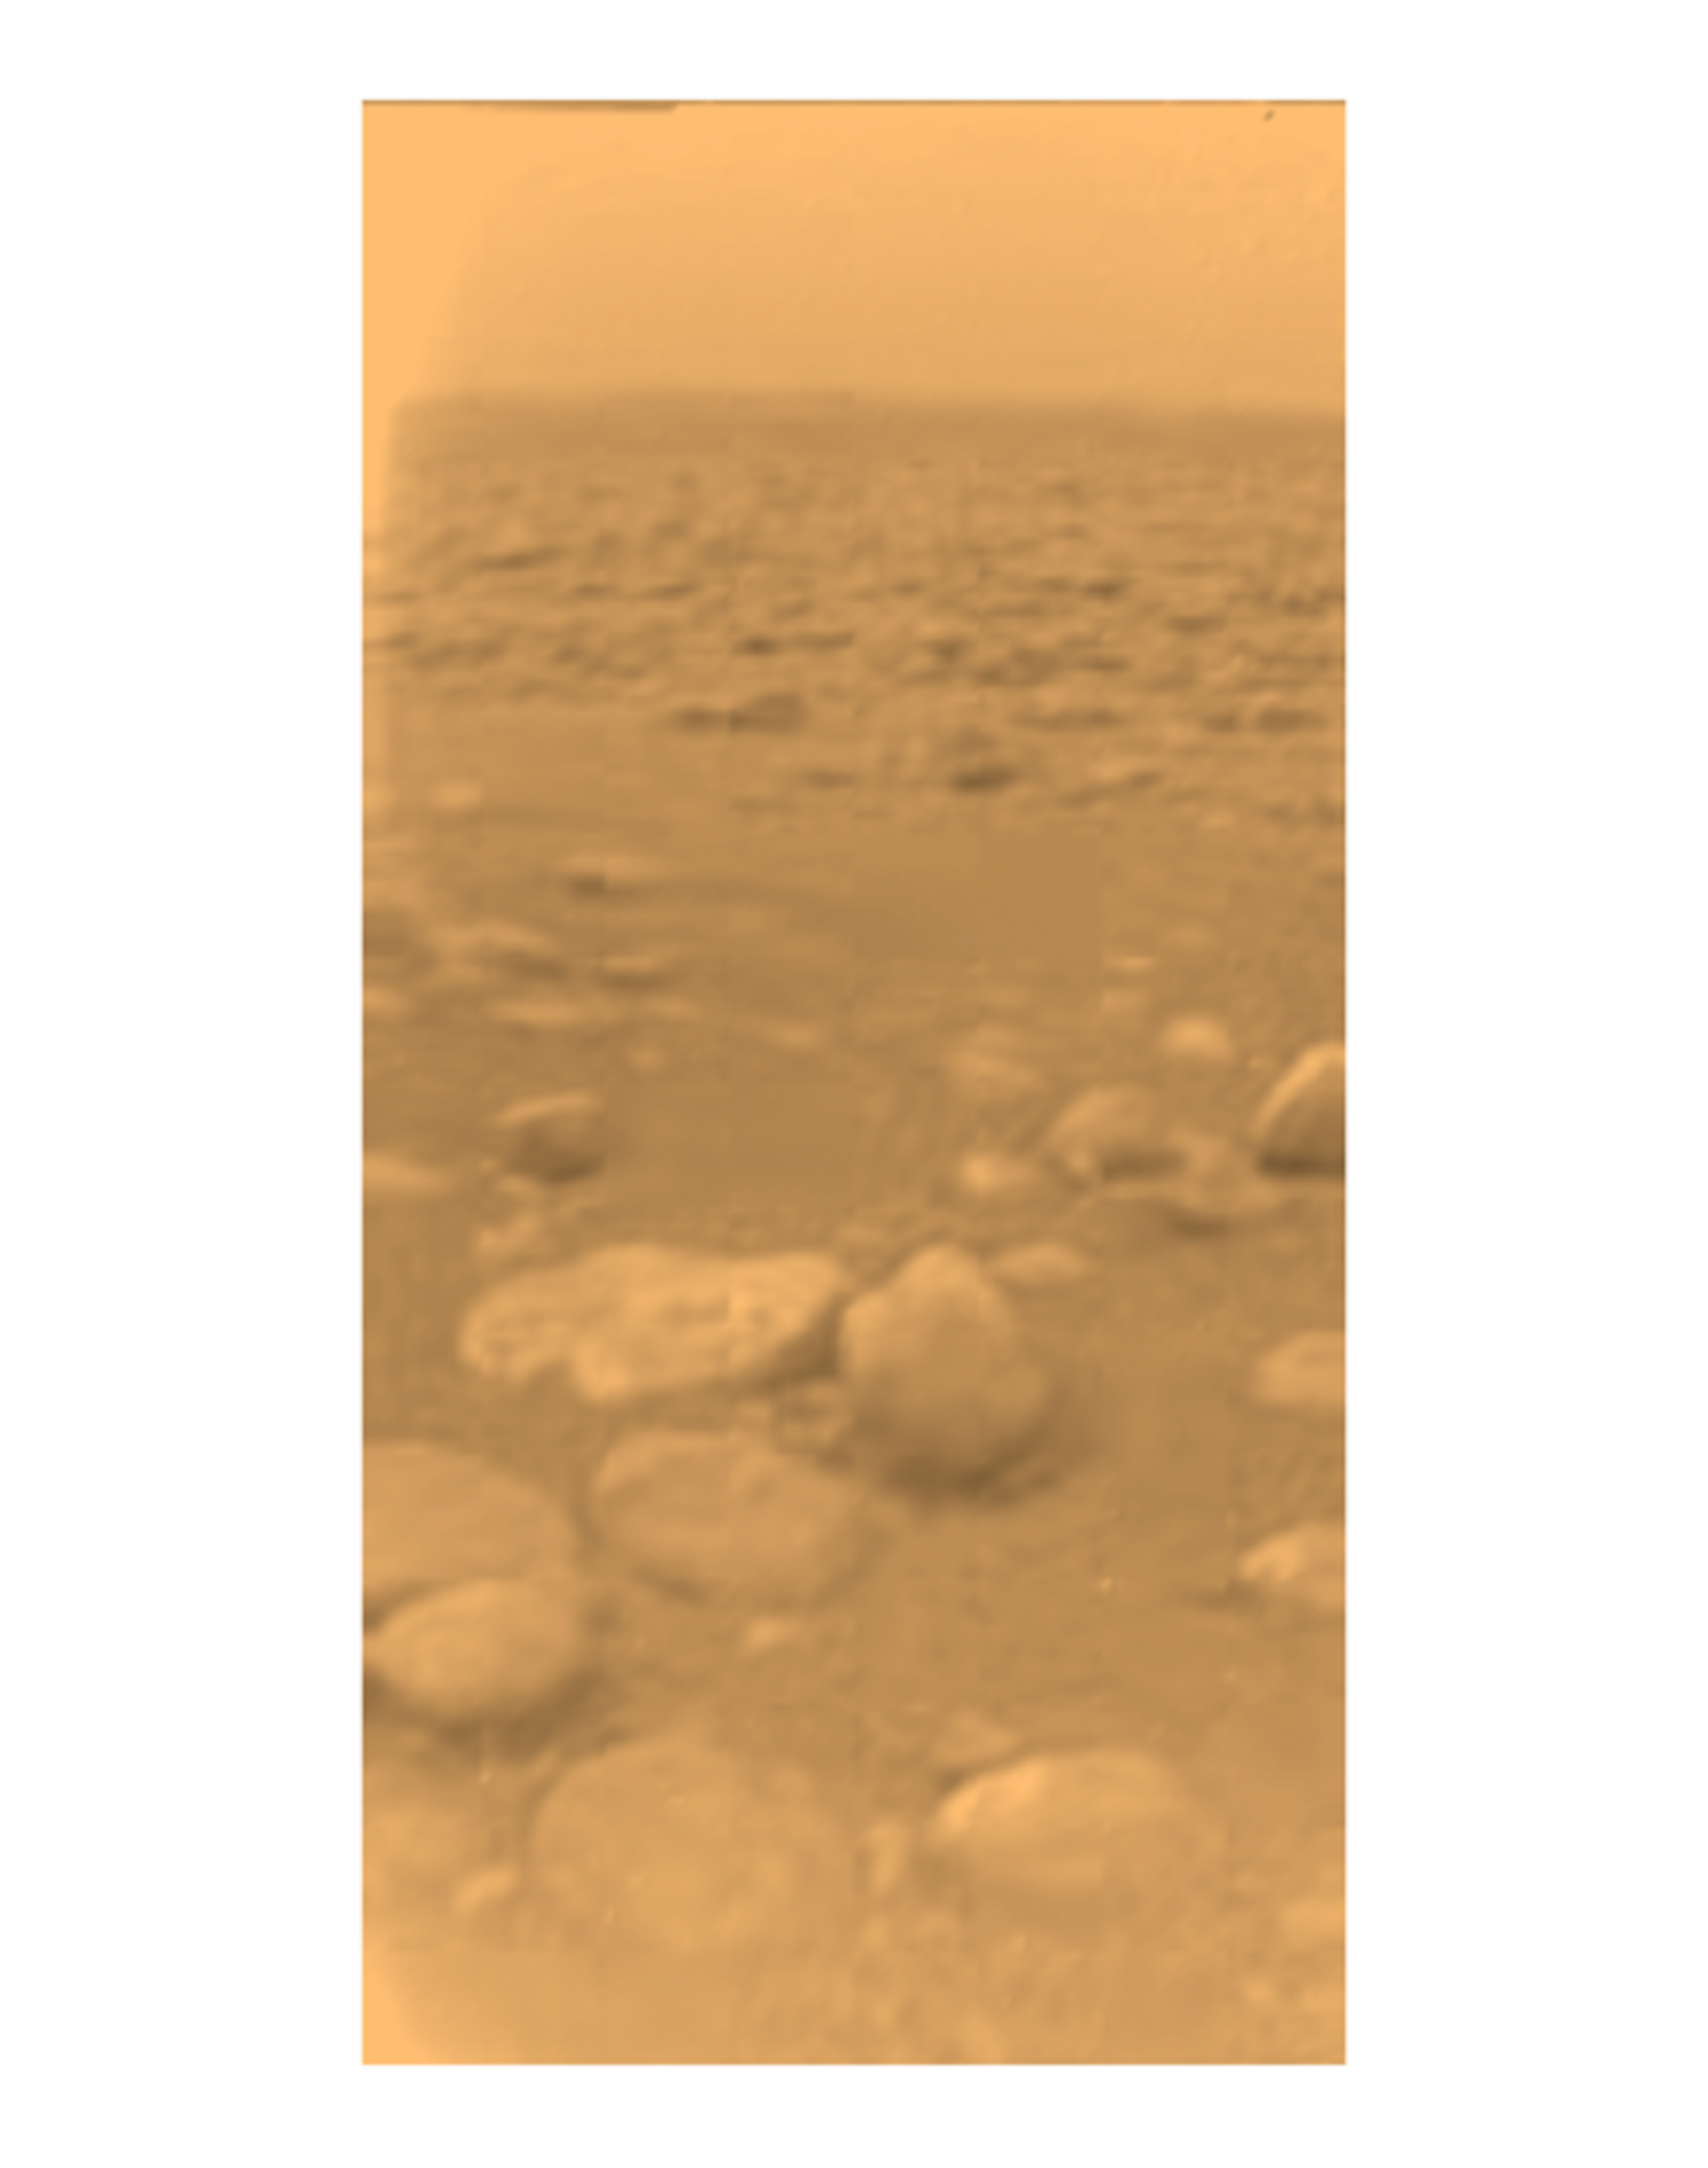 Première image couleur de la surface de Titan